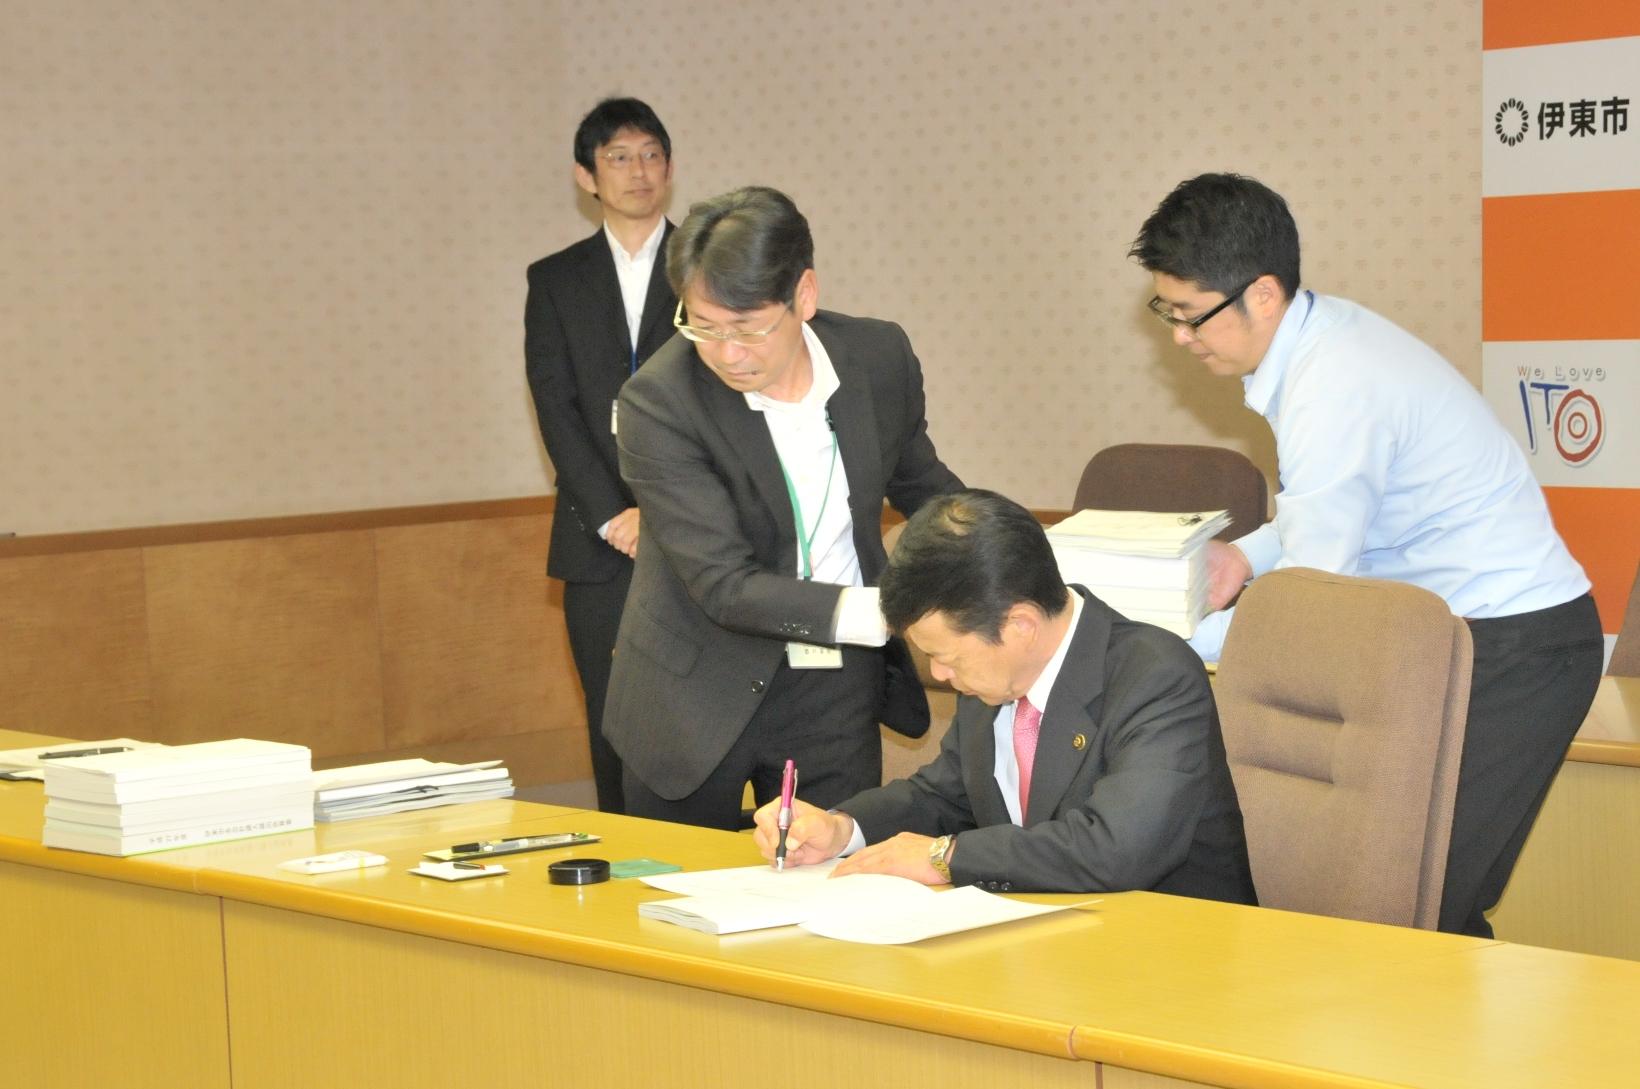 2017年5月29日書類の束を運ぶ市職員の側で書類へサインをする市長の写真